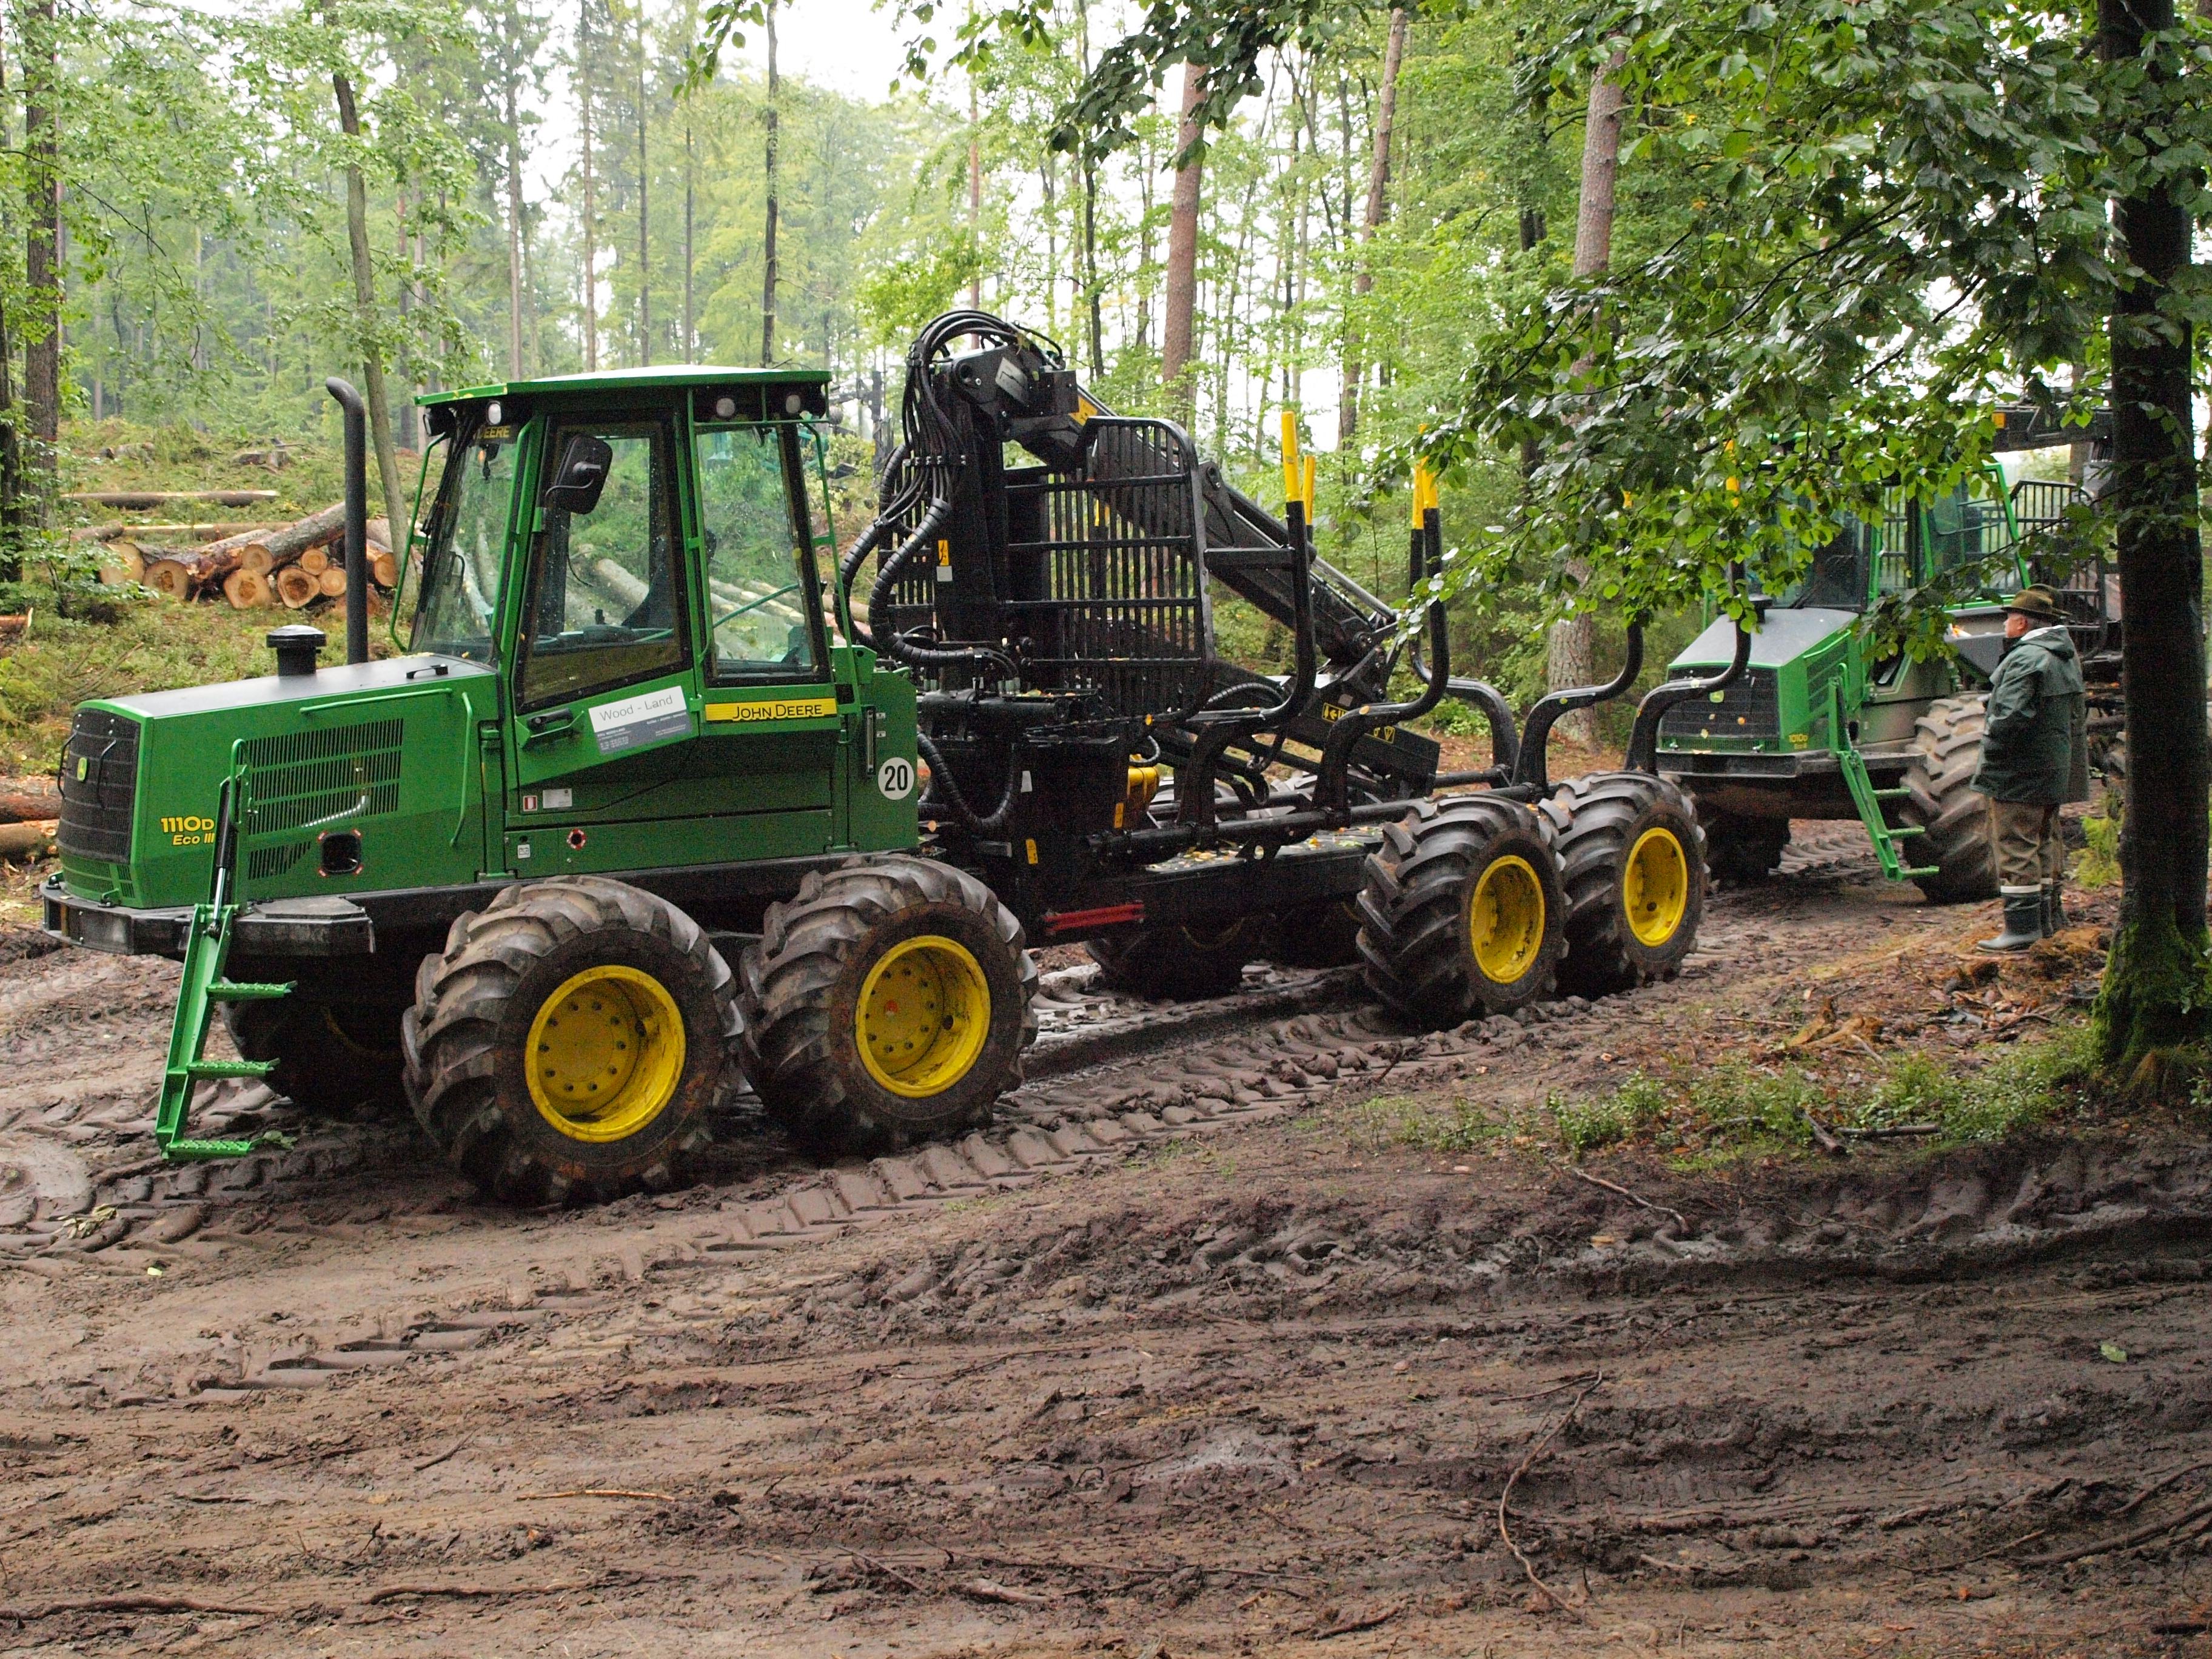 Nowoczesne maszyny gwarantują sprawny załadunek i wywózkę drewna. Foto Cezary Florek